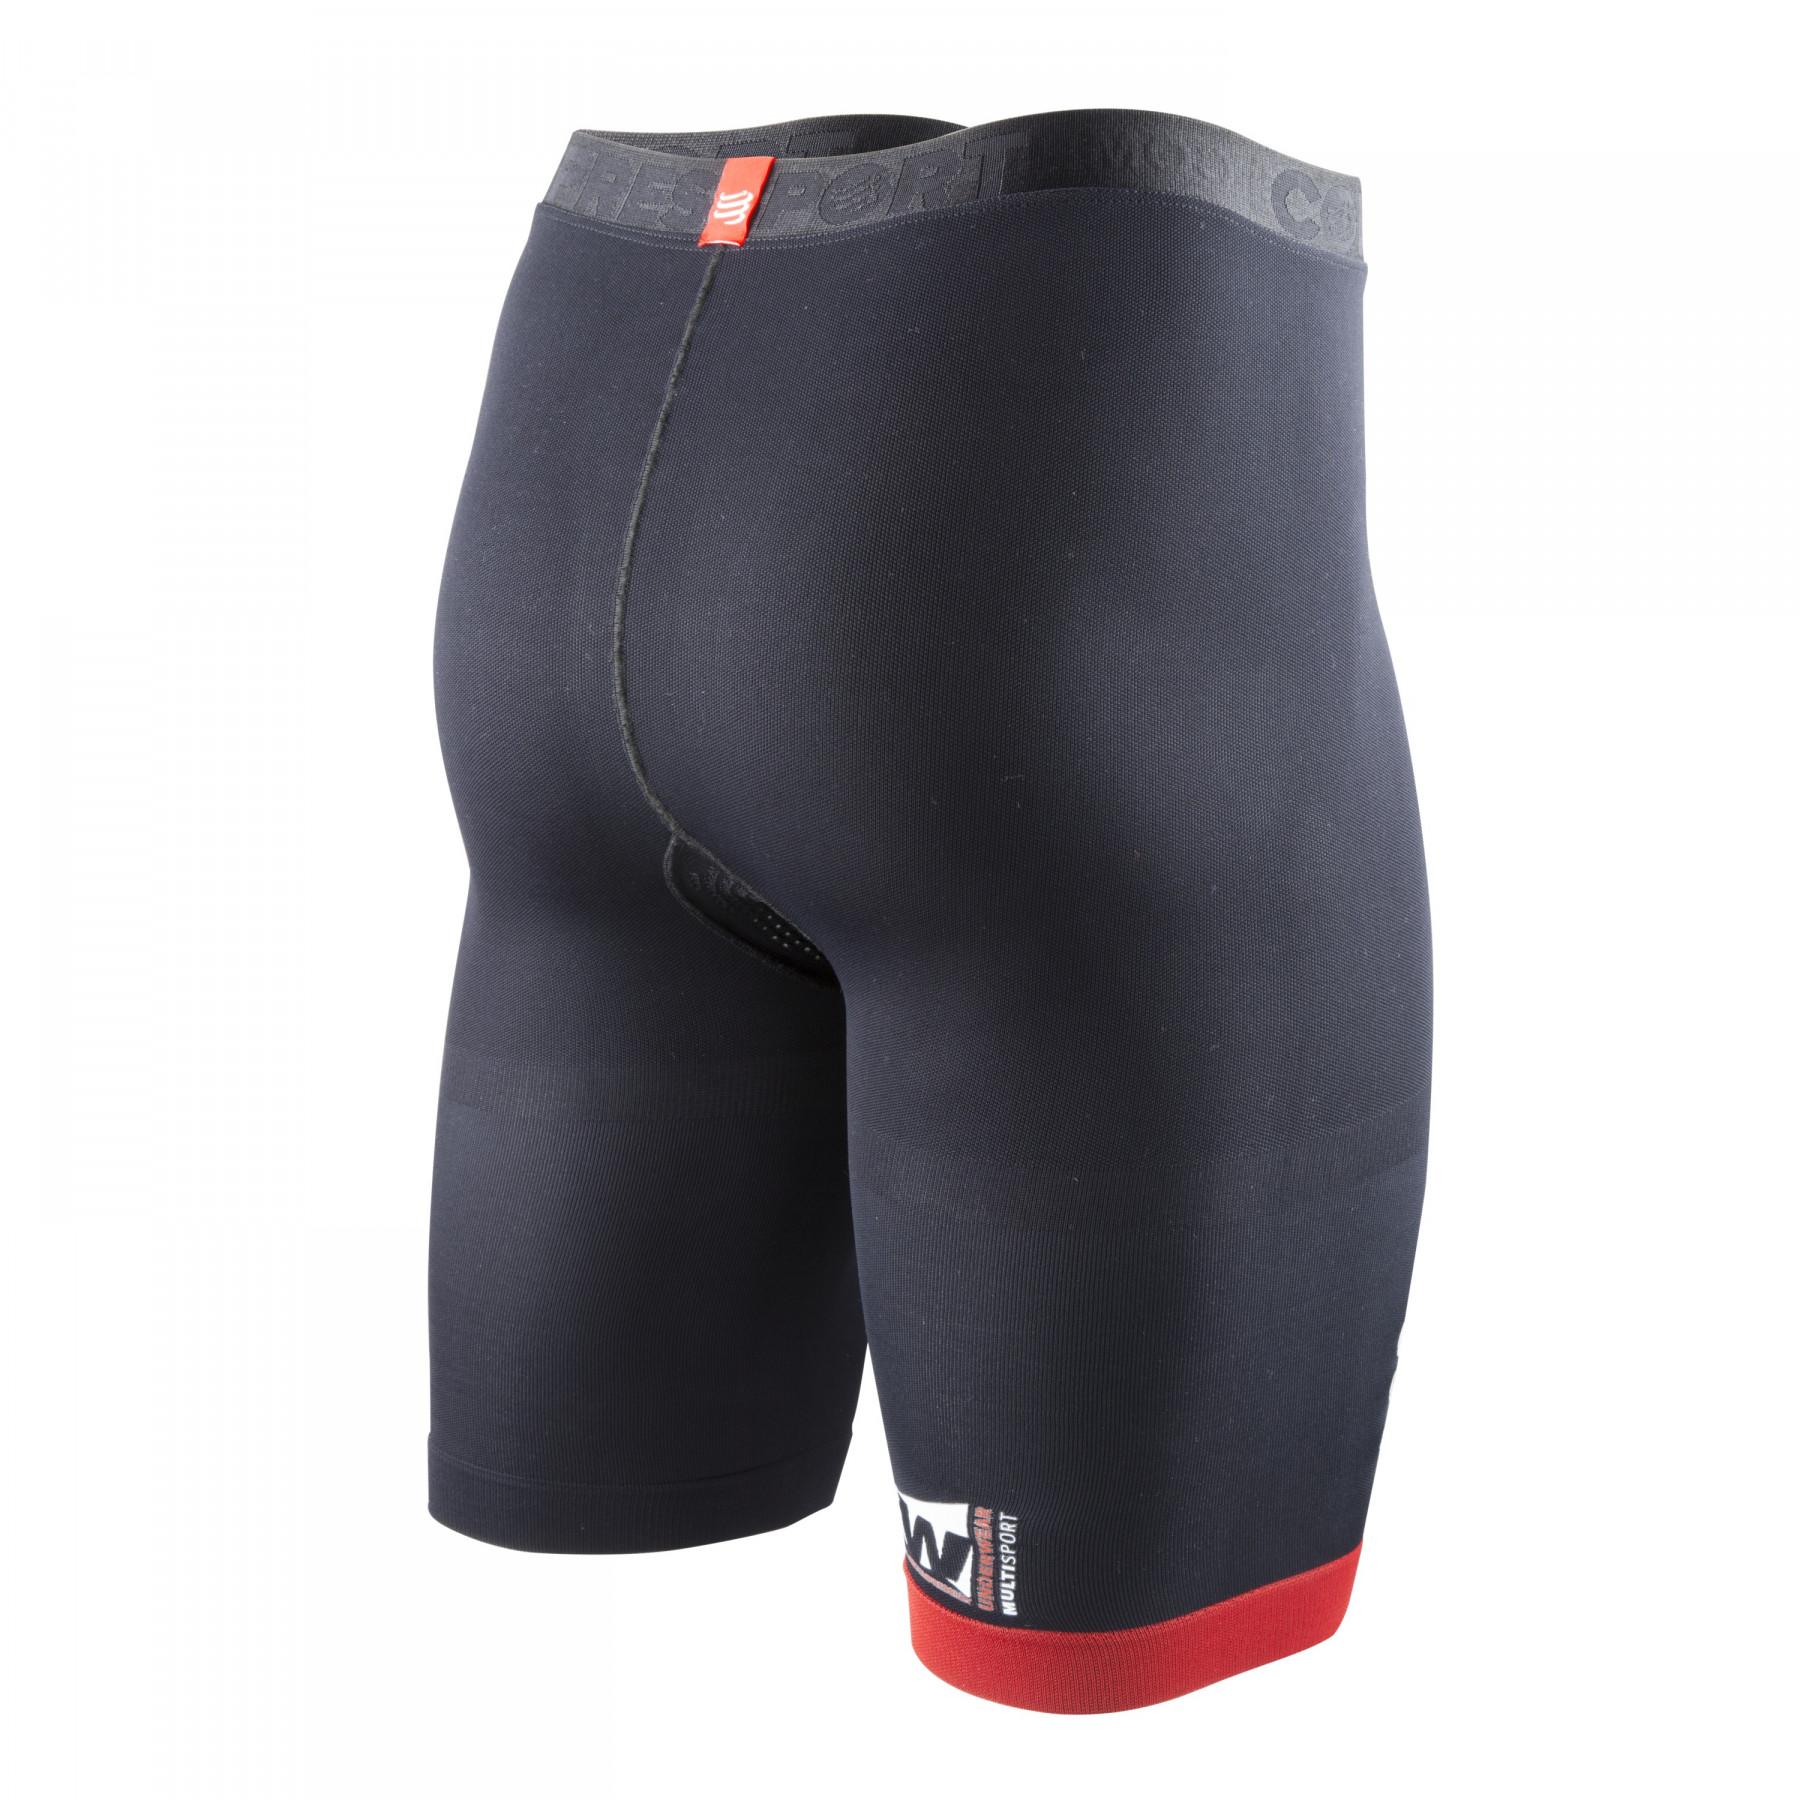 Pantalones cortos de compresión Compressport Multisport V2